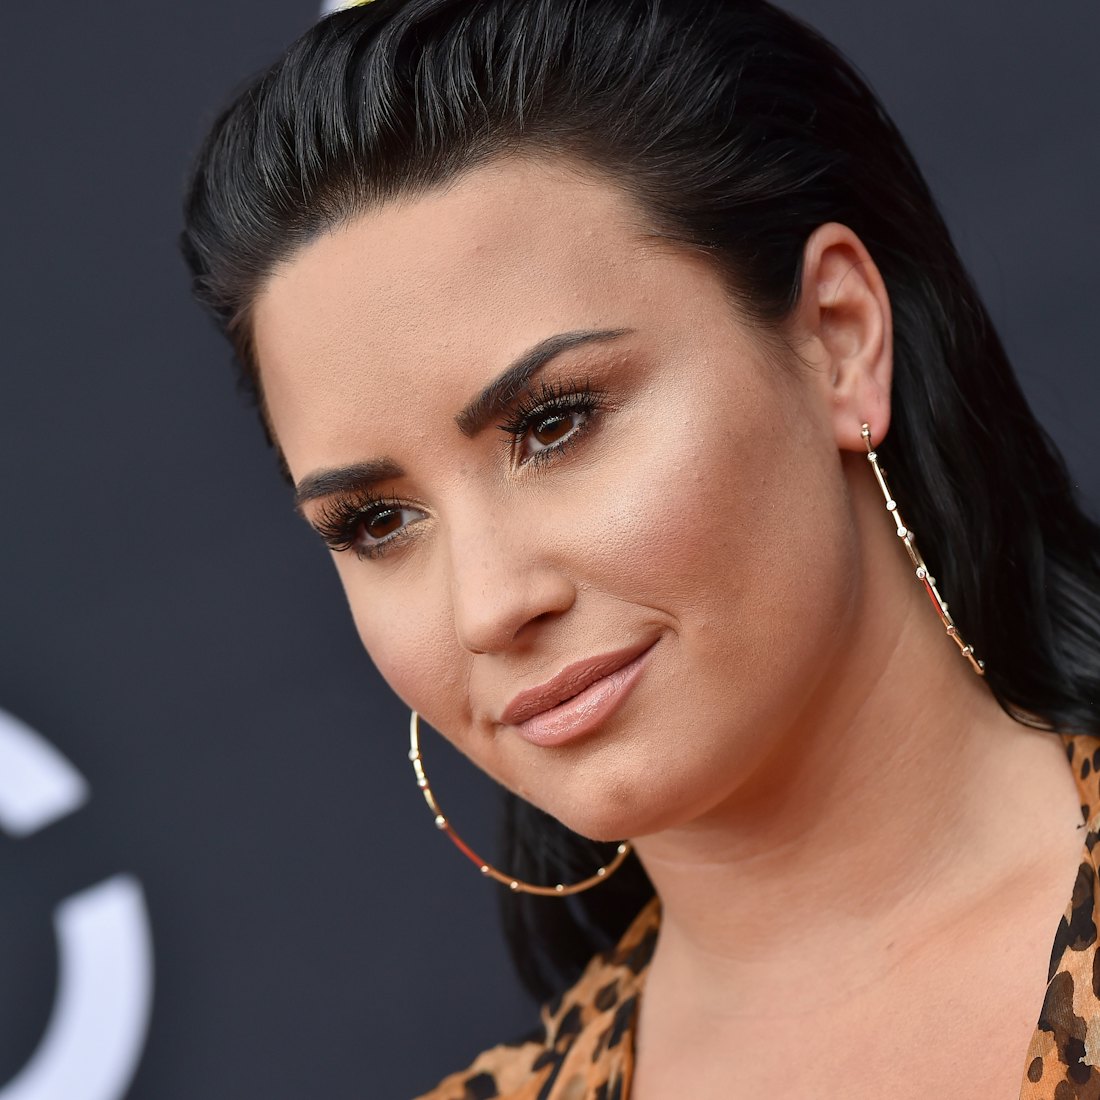 Demi Lovato attends the 2018 Billboard Music Awards